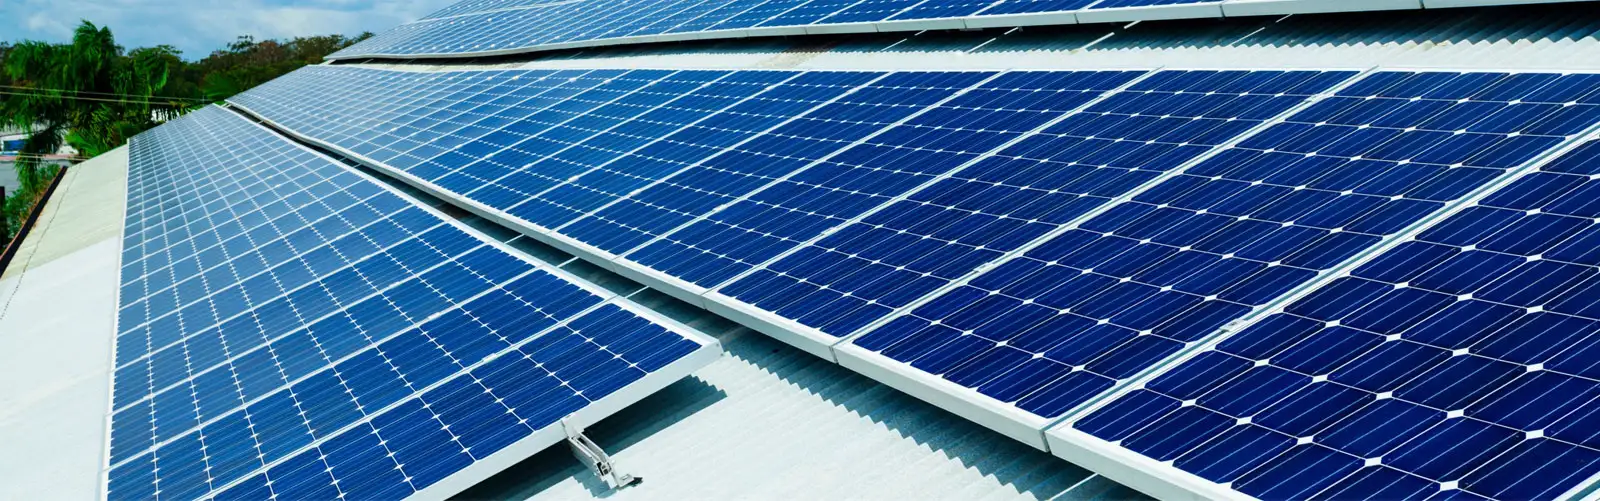 Photovoltaic glass enamel for solar panels